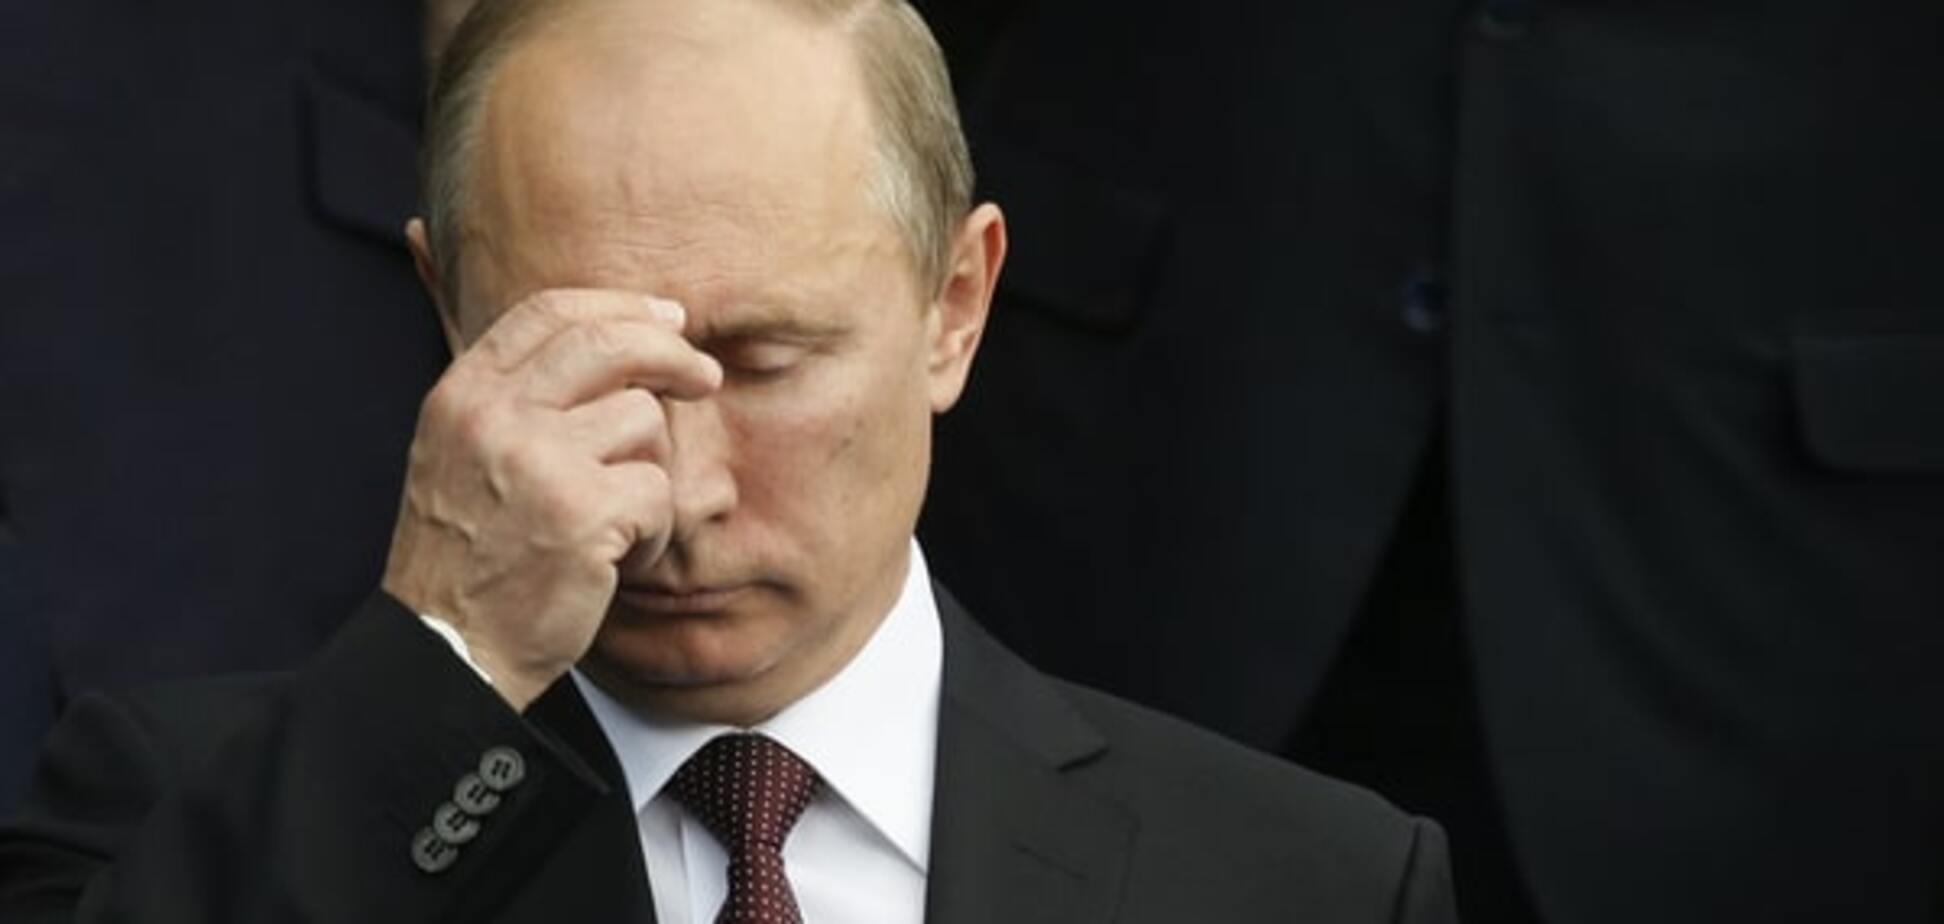 Політичний хабар: що отримає Путін замість $3 млрд Януковича